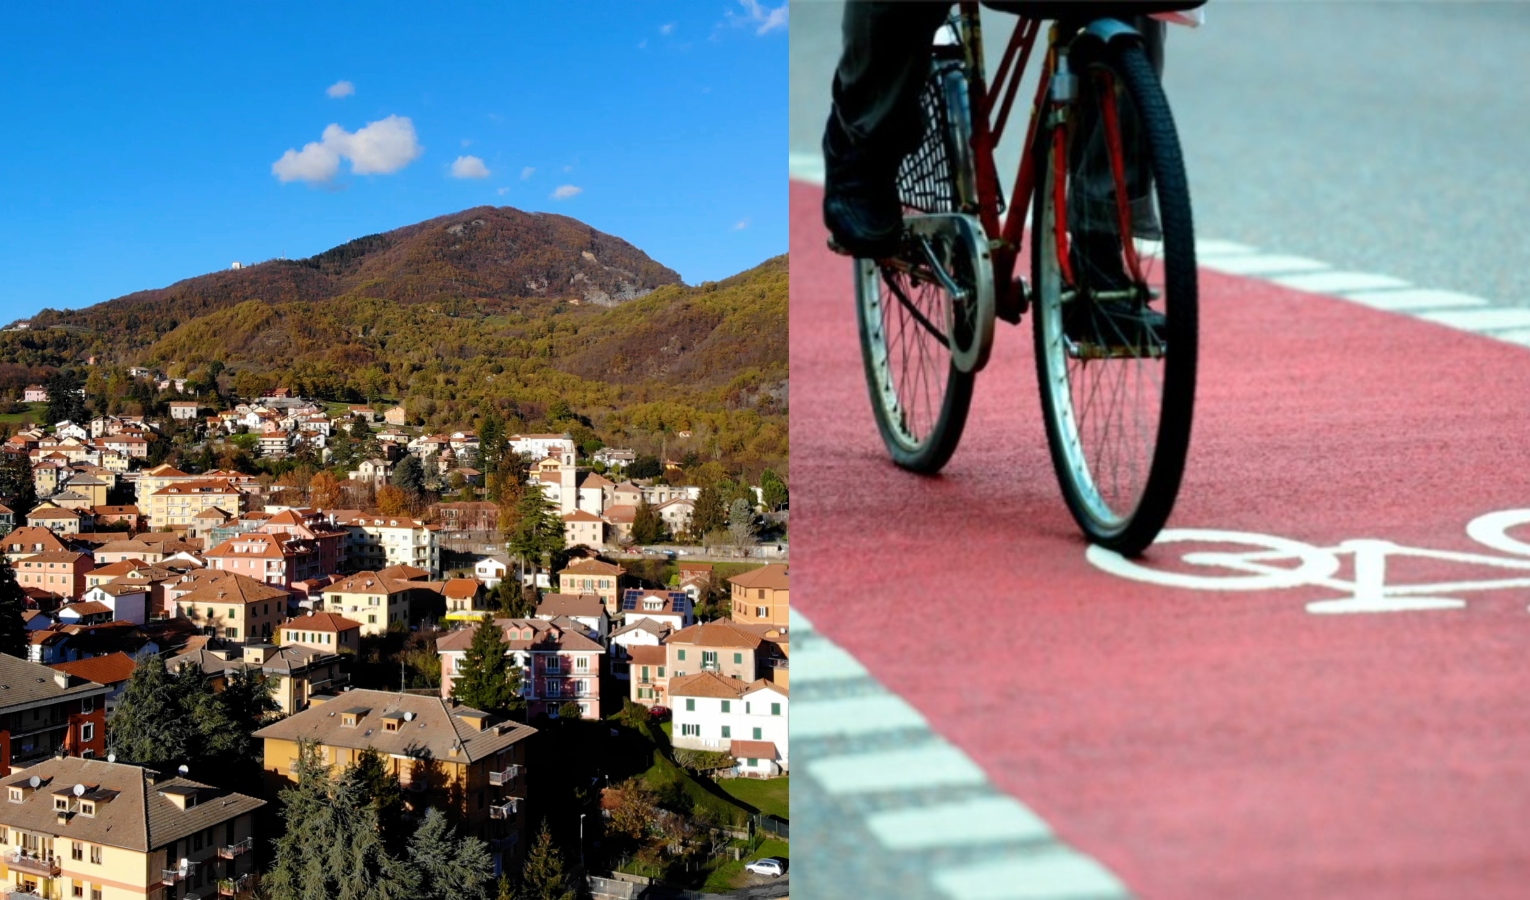 Mobilità sostenibile: ecco il progetto per le piste ciclabili nelle vallate